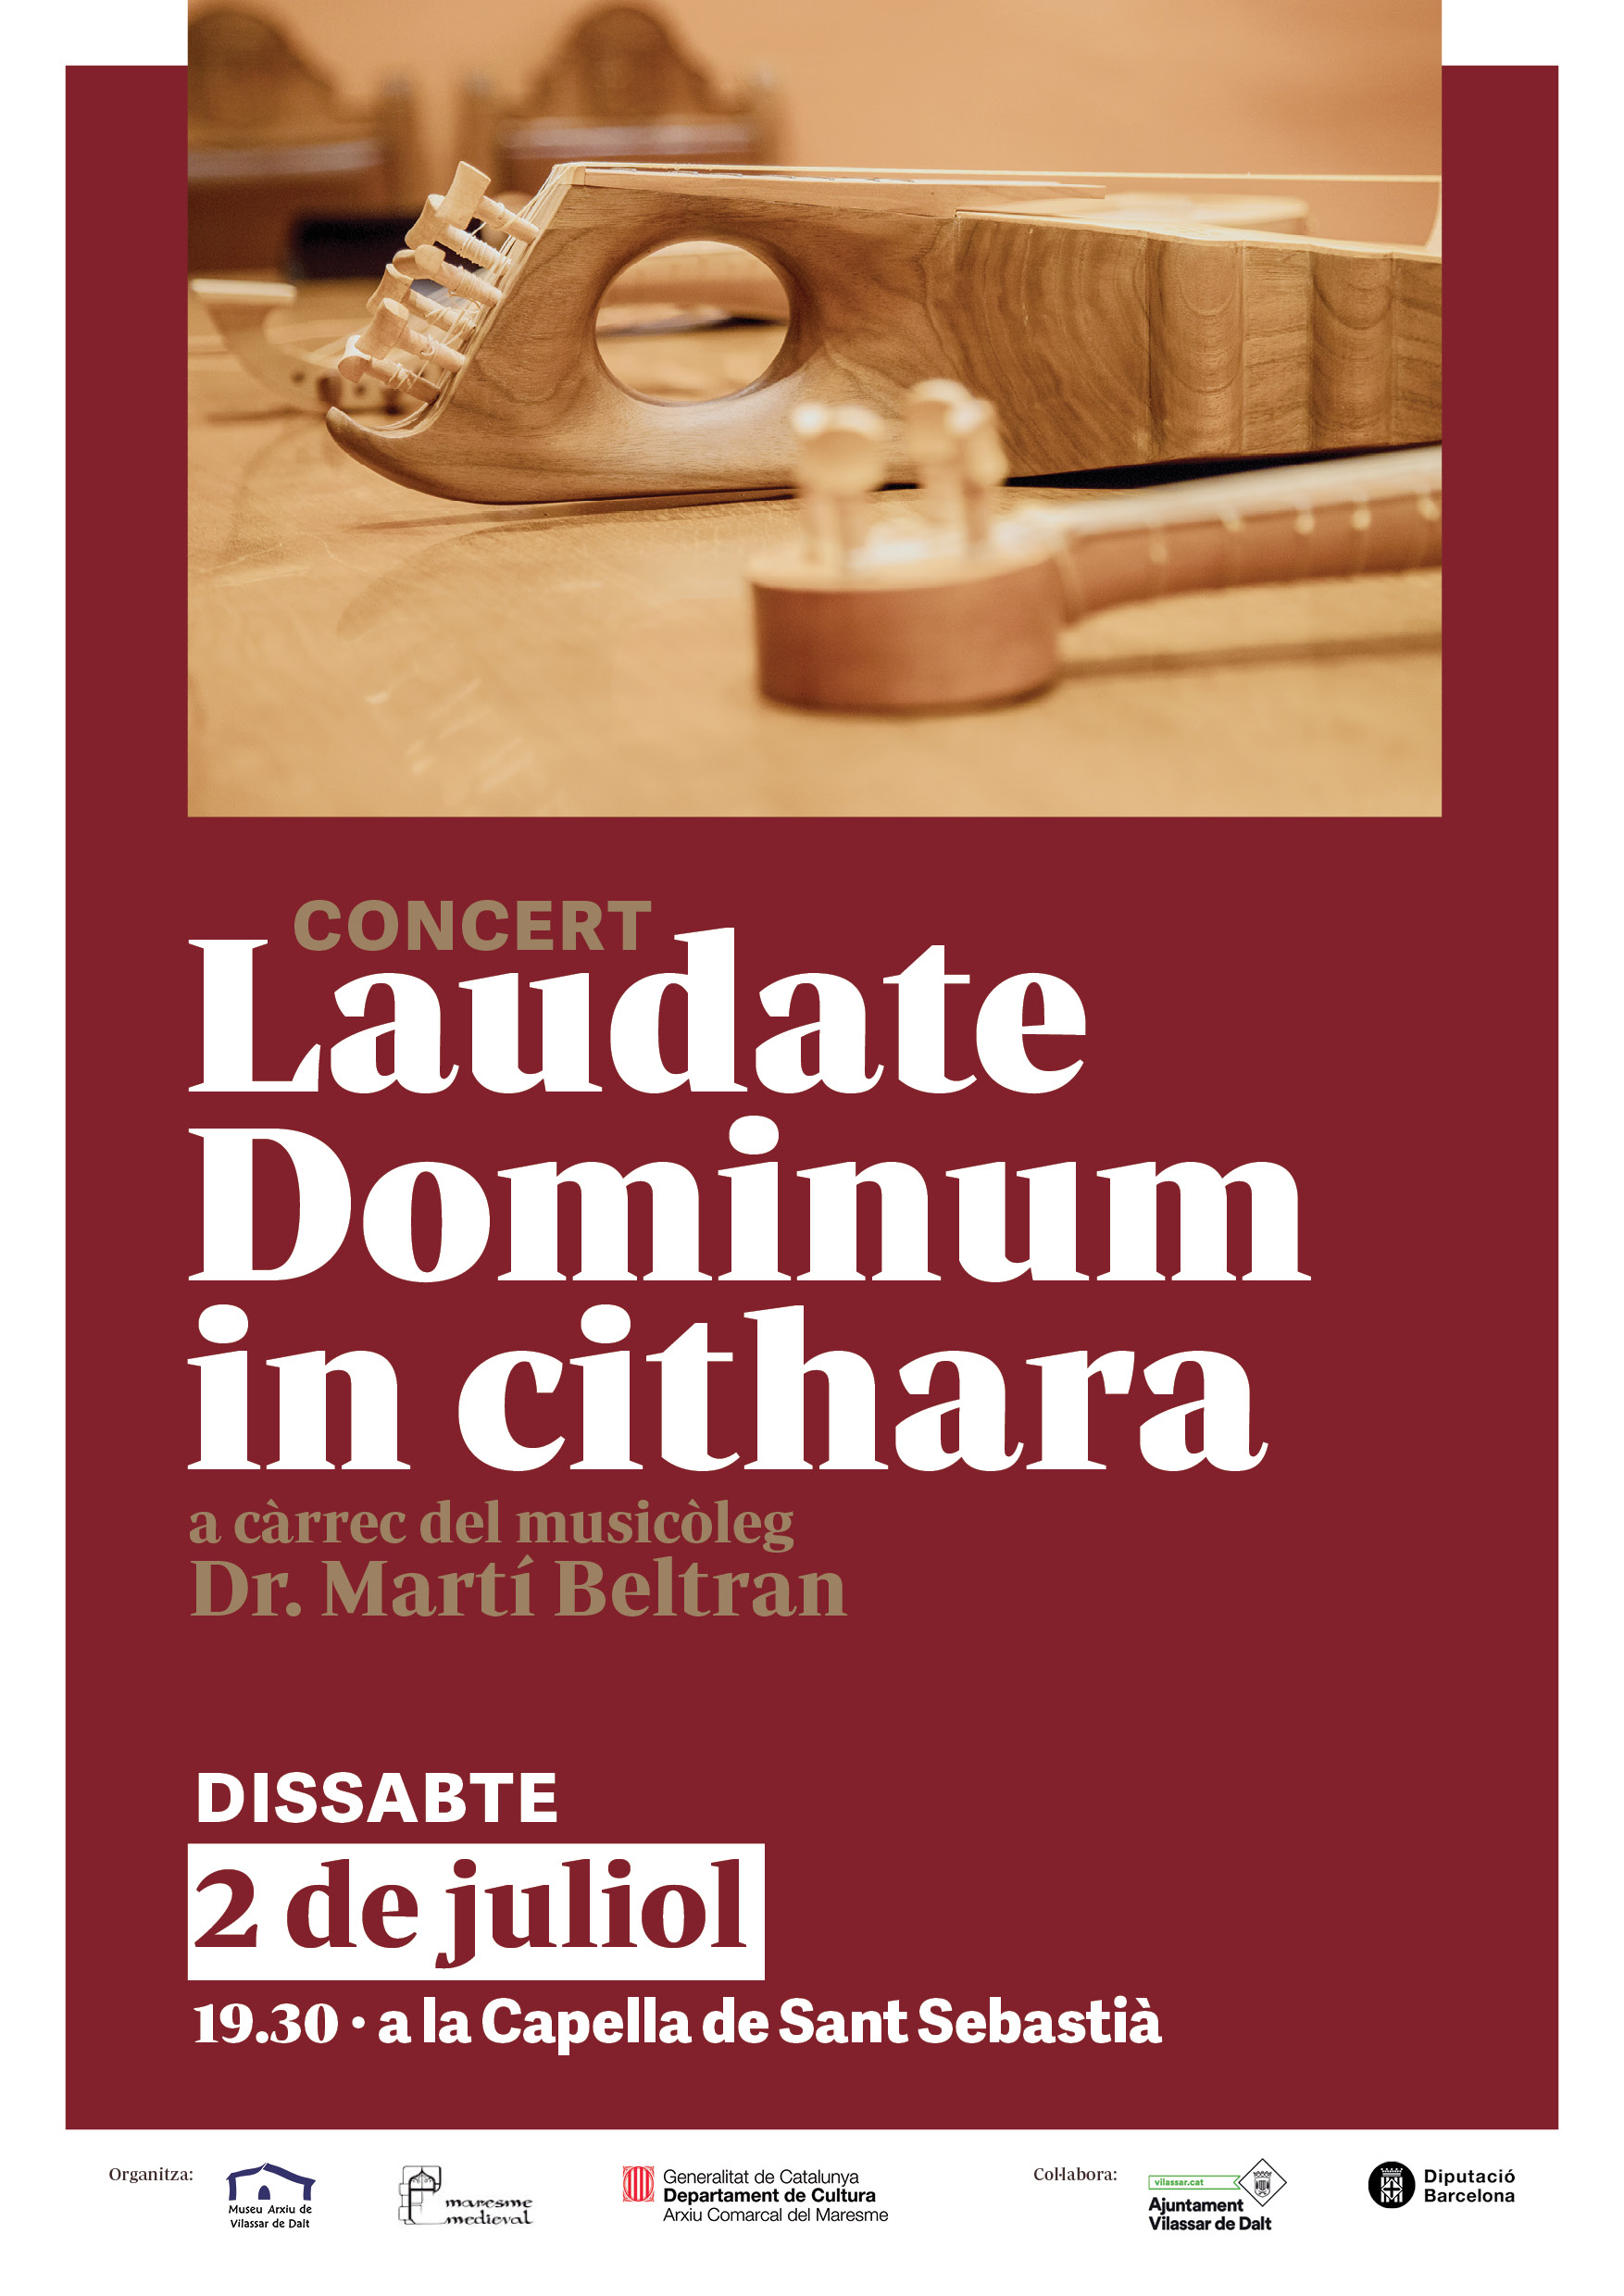 Concert Laudate Dominum in cithara